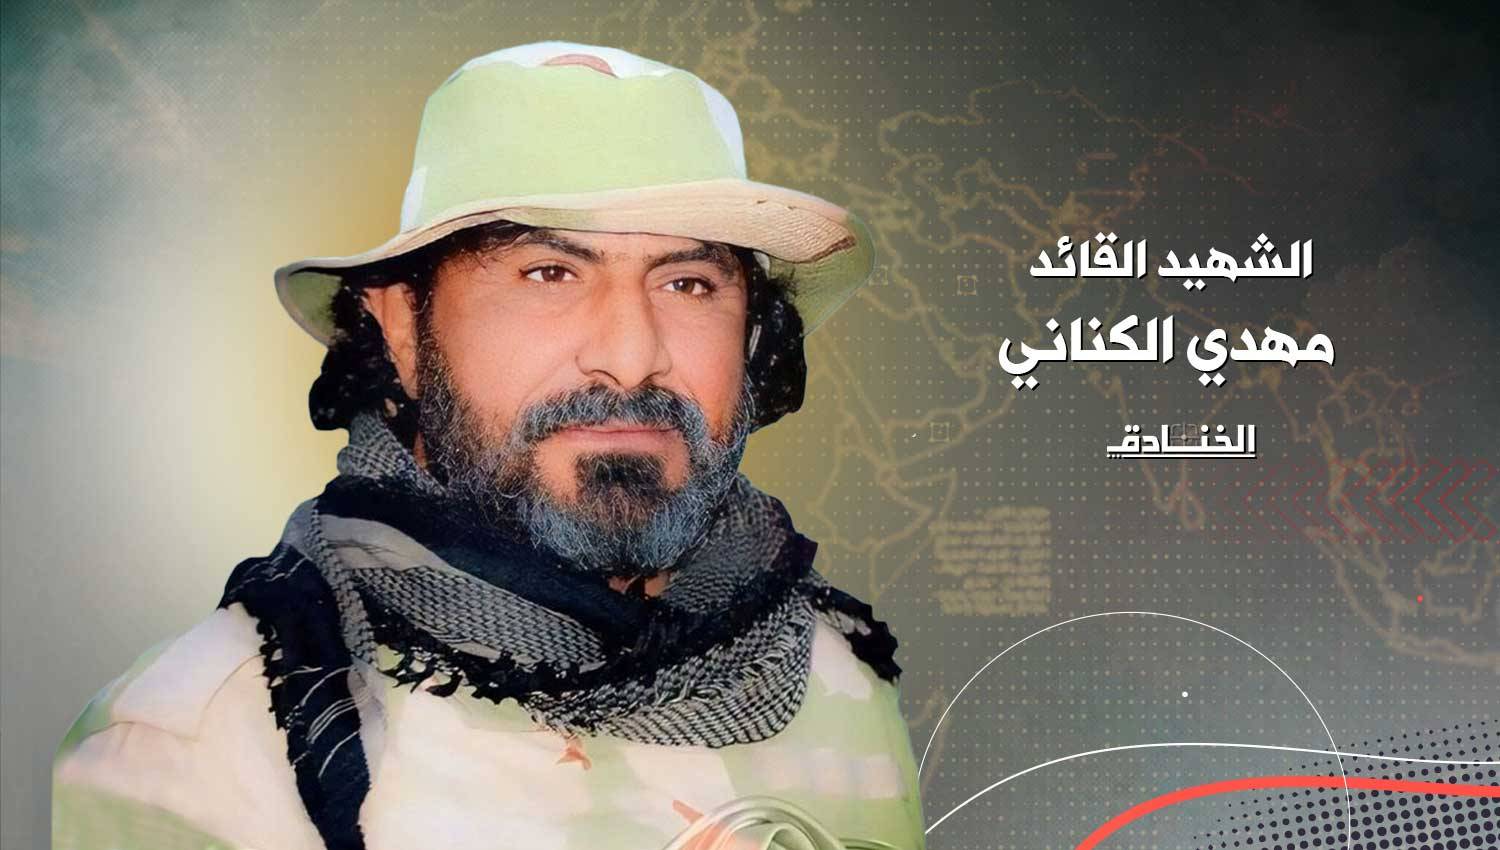 الشهيد القائد مهدي الكناني: شجاعة لا تحدّها حدود